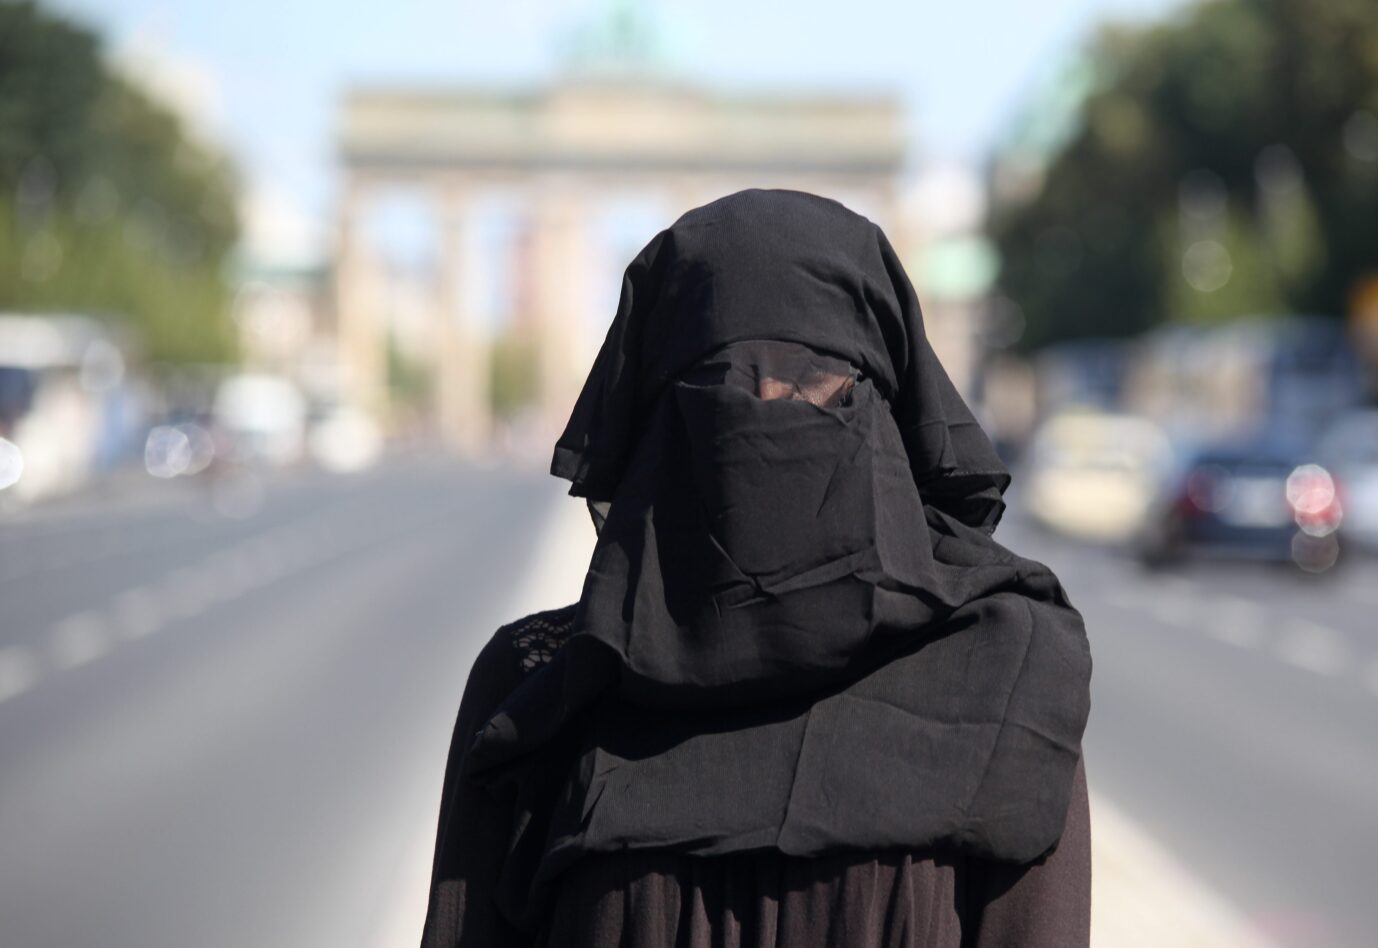 Komplett verhüllte Frau vor dem Brandenburger Tor: Bald gängiges Straßenbild in Deutschland? (Symbolbild)